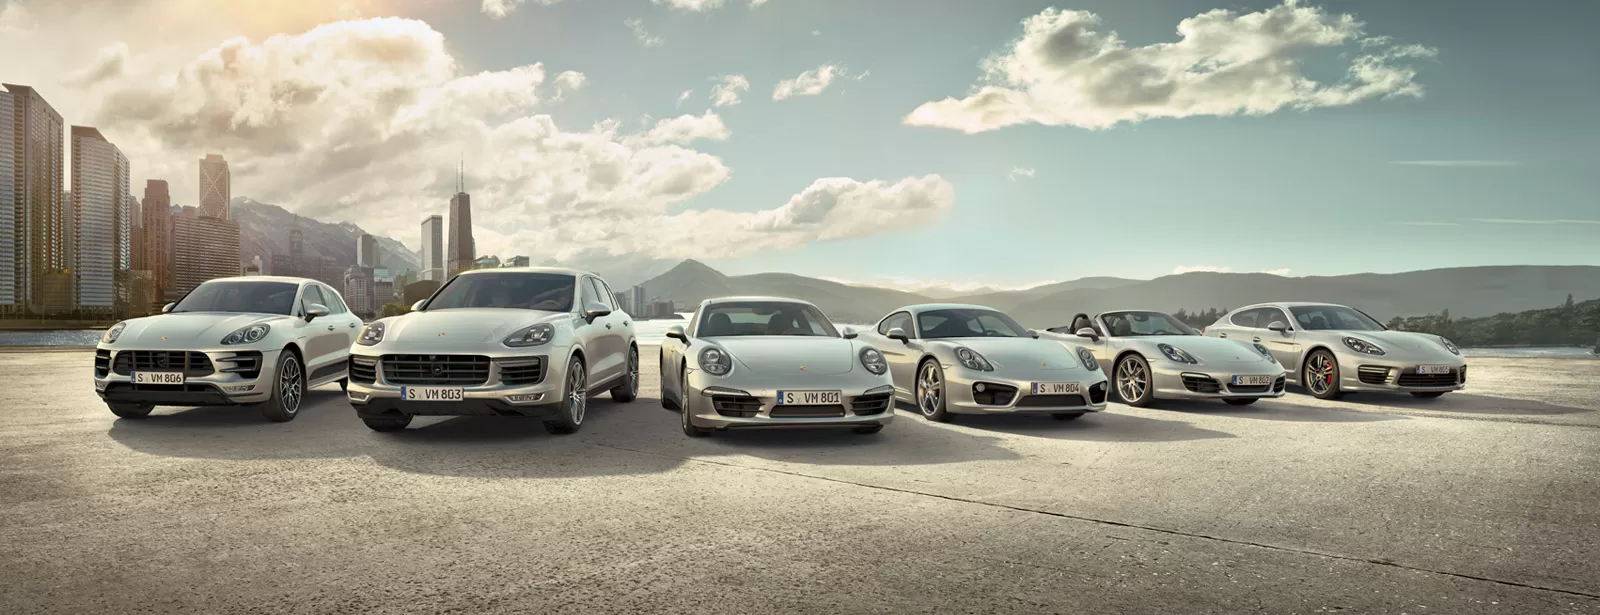 Porsche публикует интегрированный отчет по итогам года и устойчивому развитию